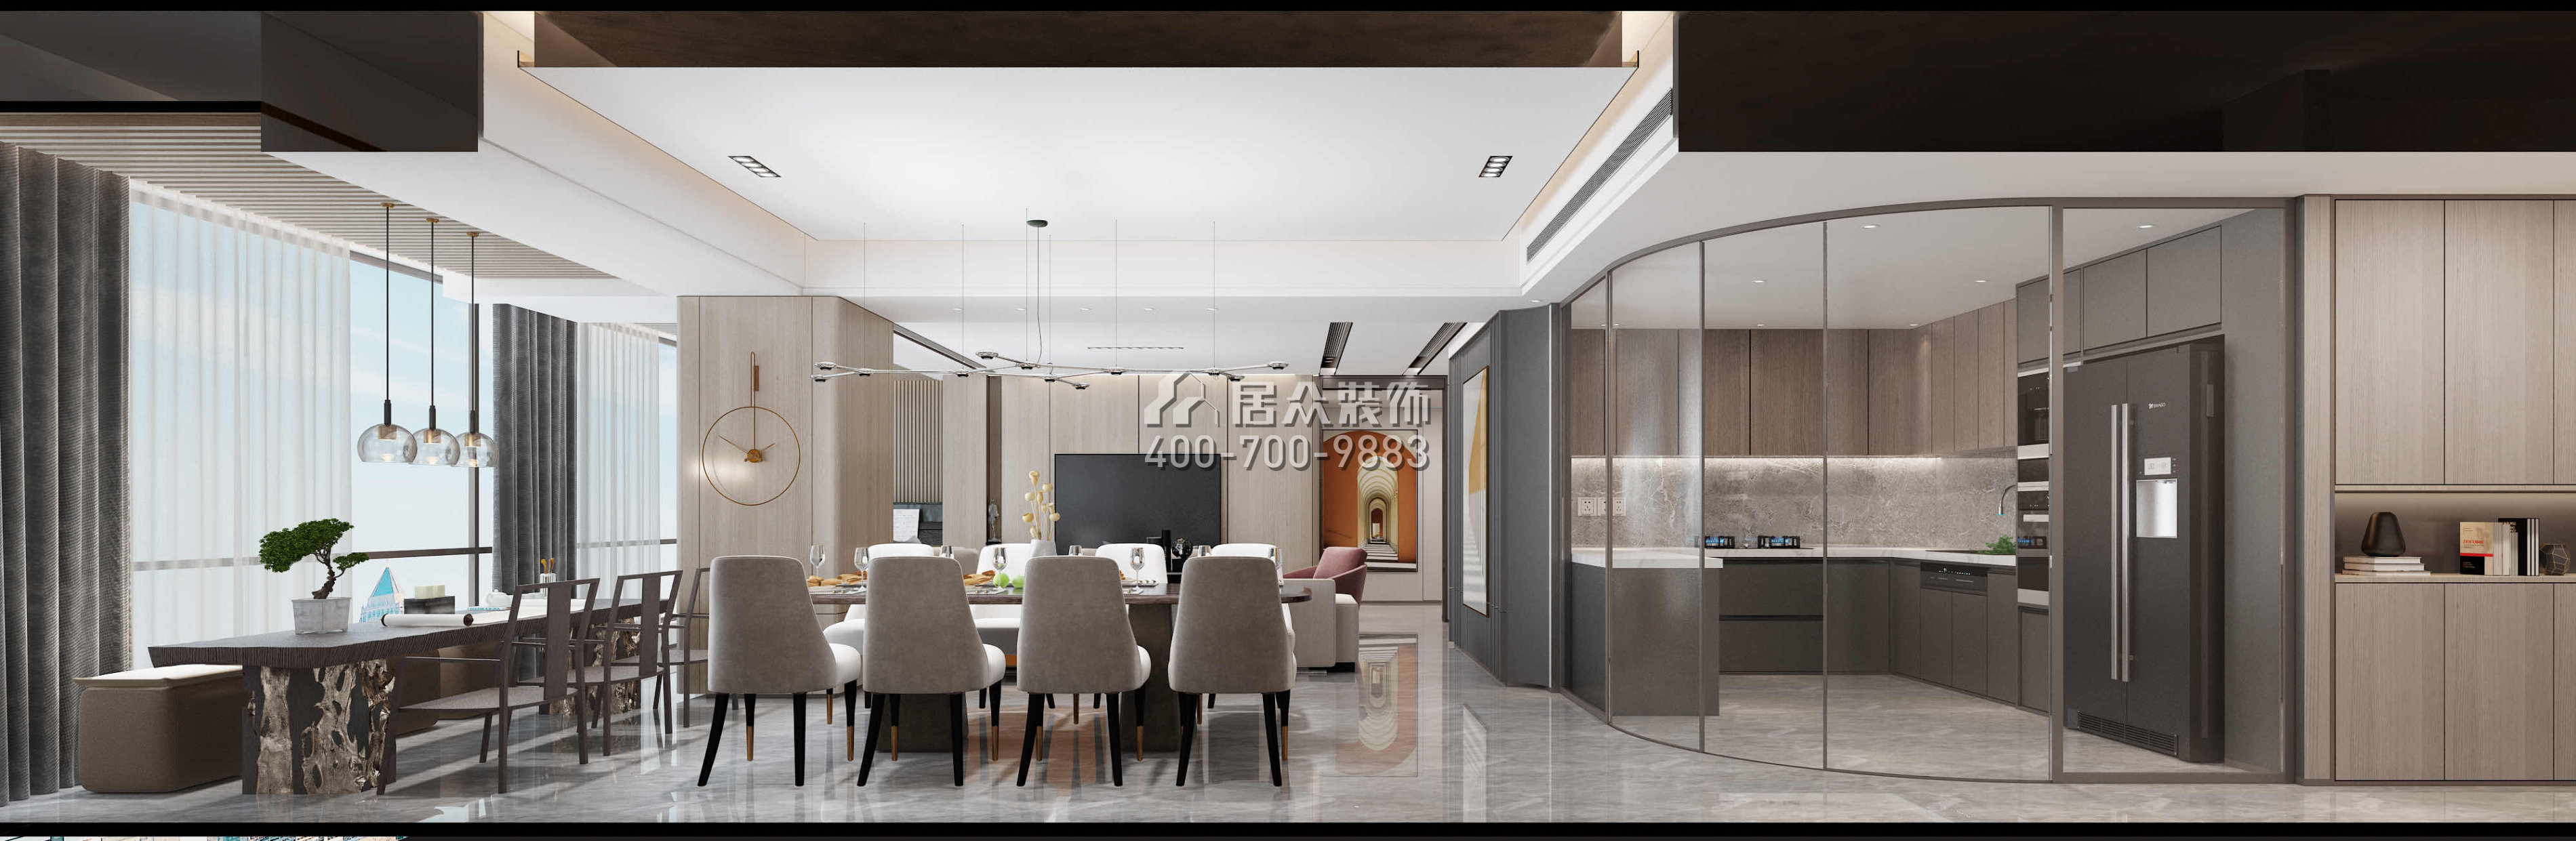 華潤城潤府198平方米現代簡約風格平層戶型客餐廳一體裝修效果圖